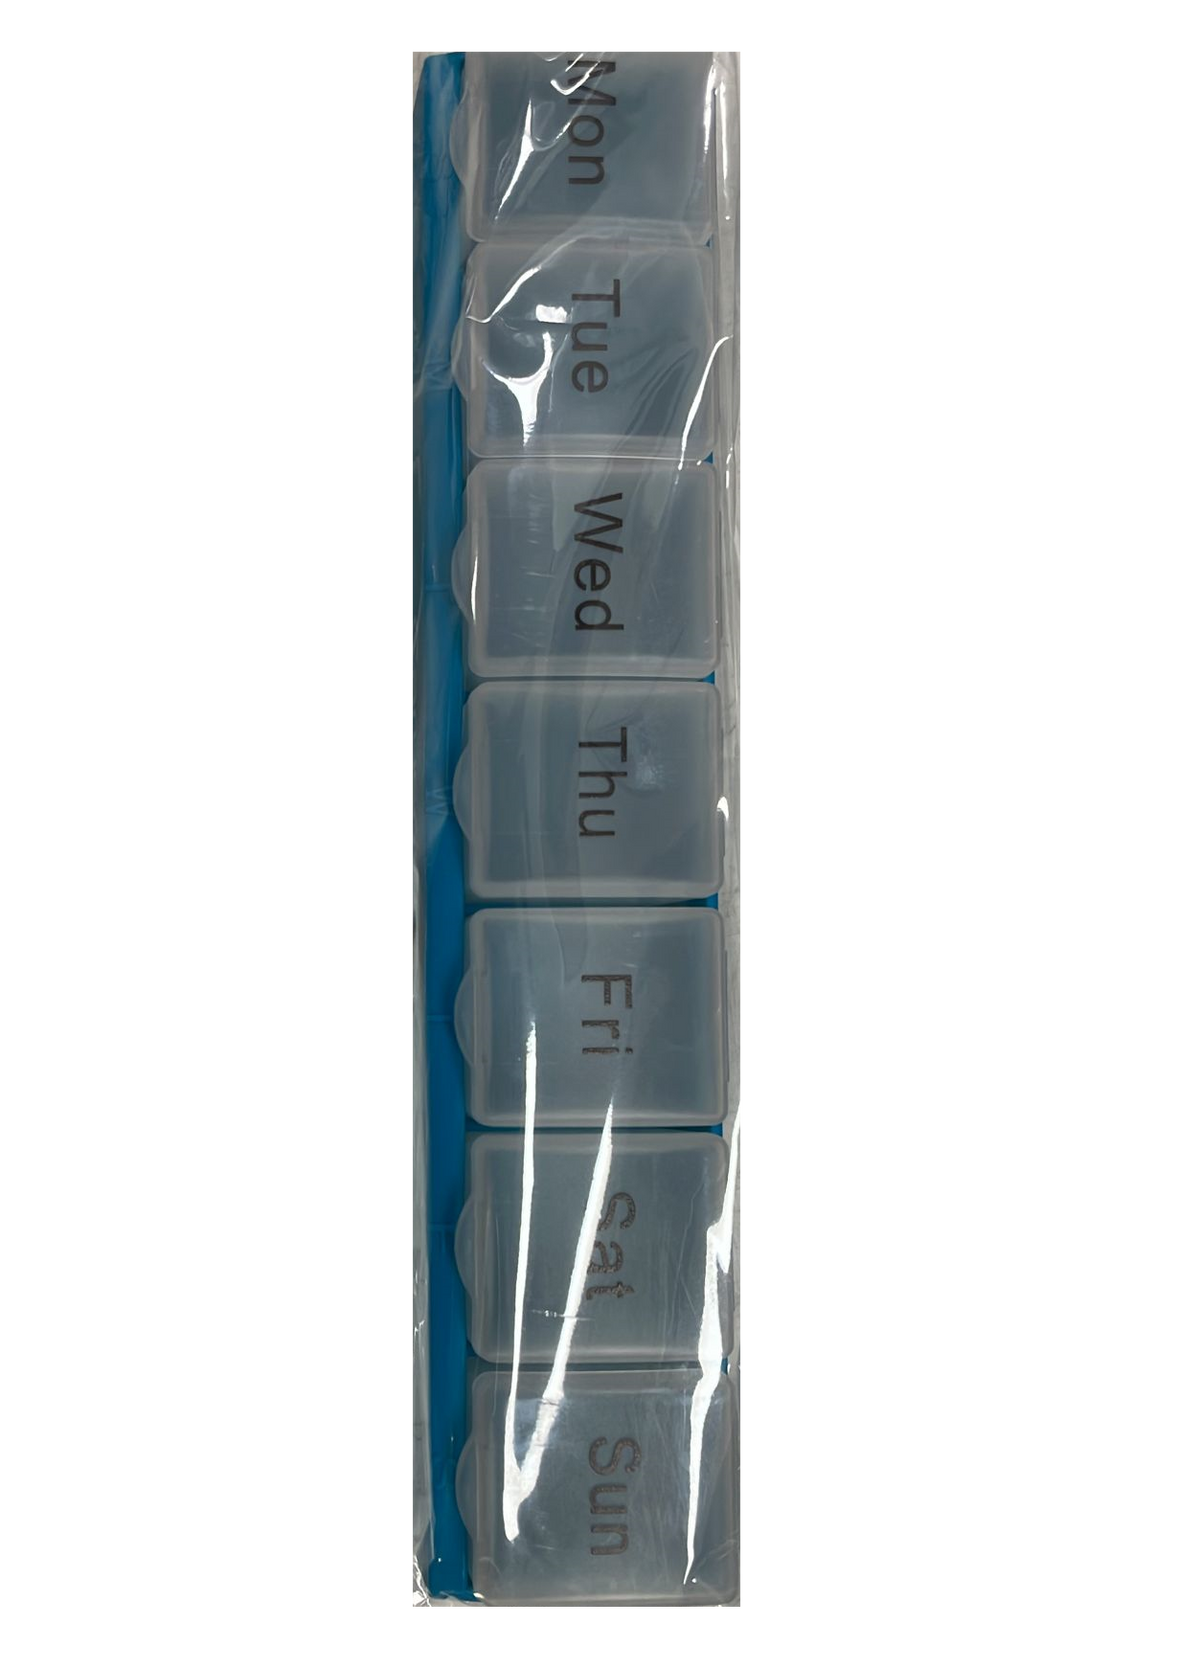 Caruso Pill Box - GWP